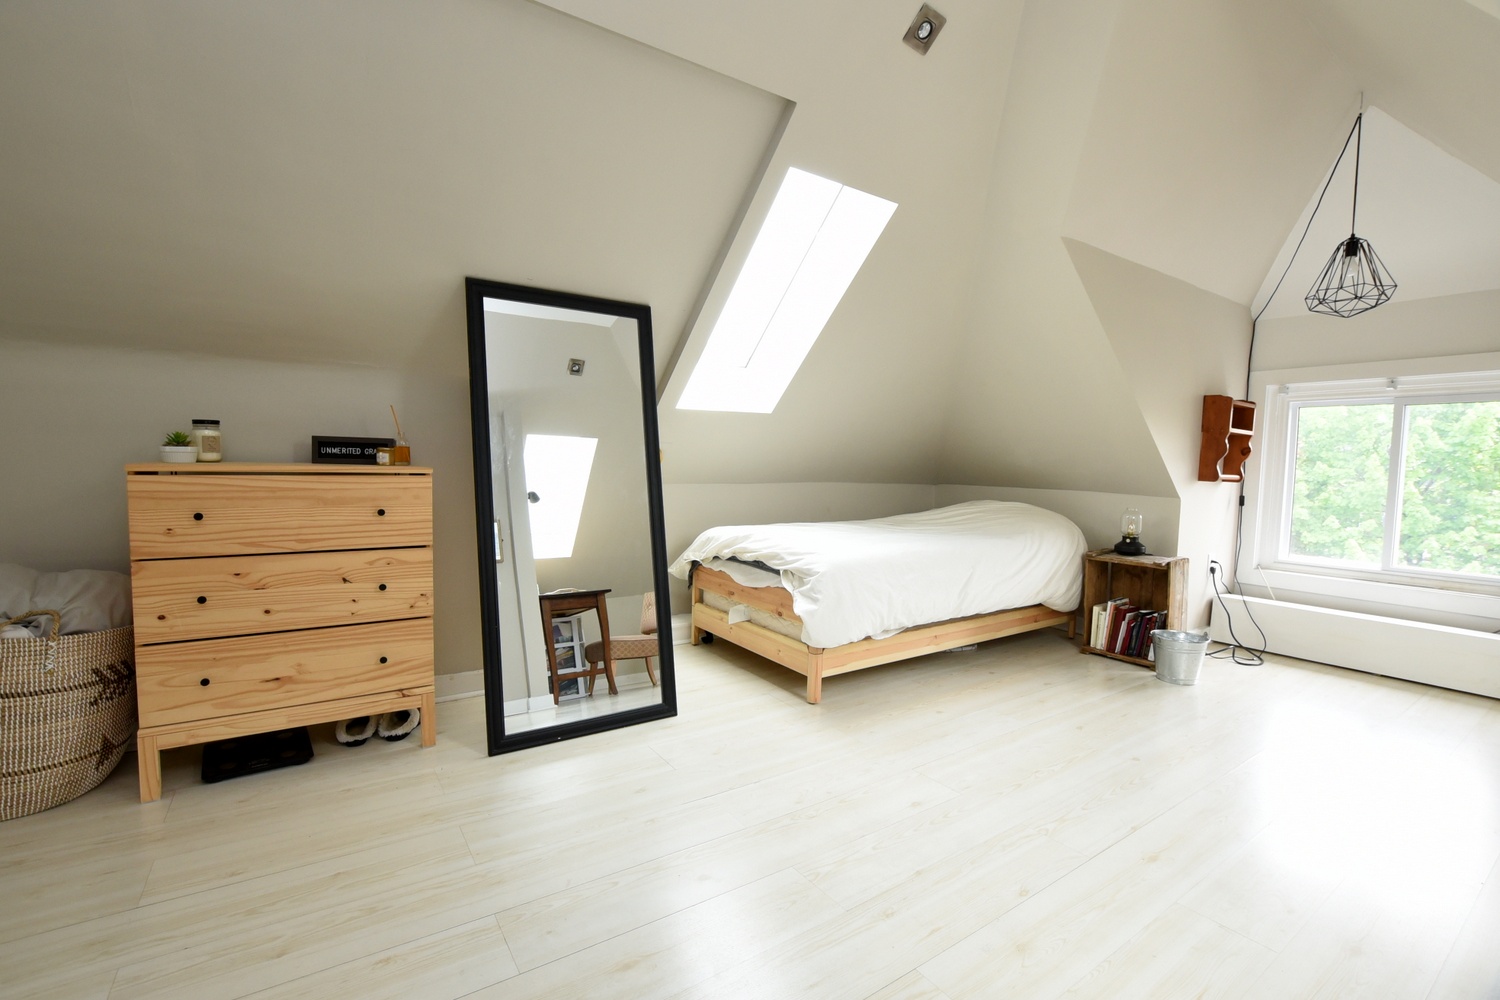 A - Bedroom Loft